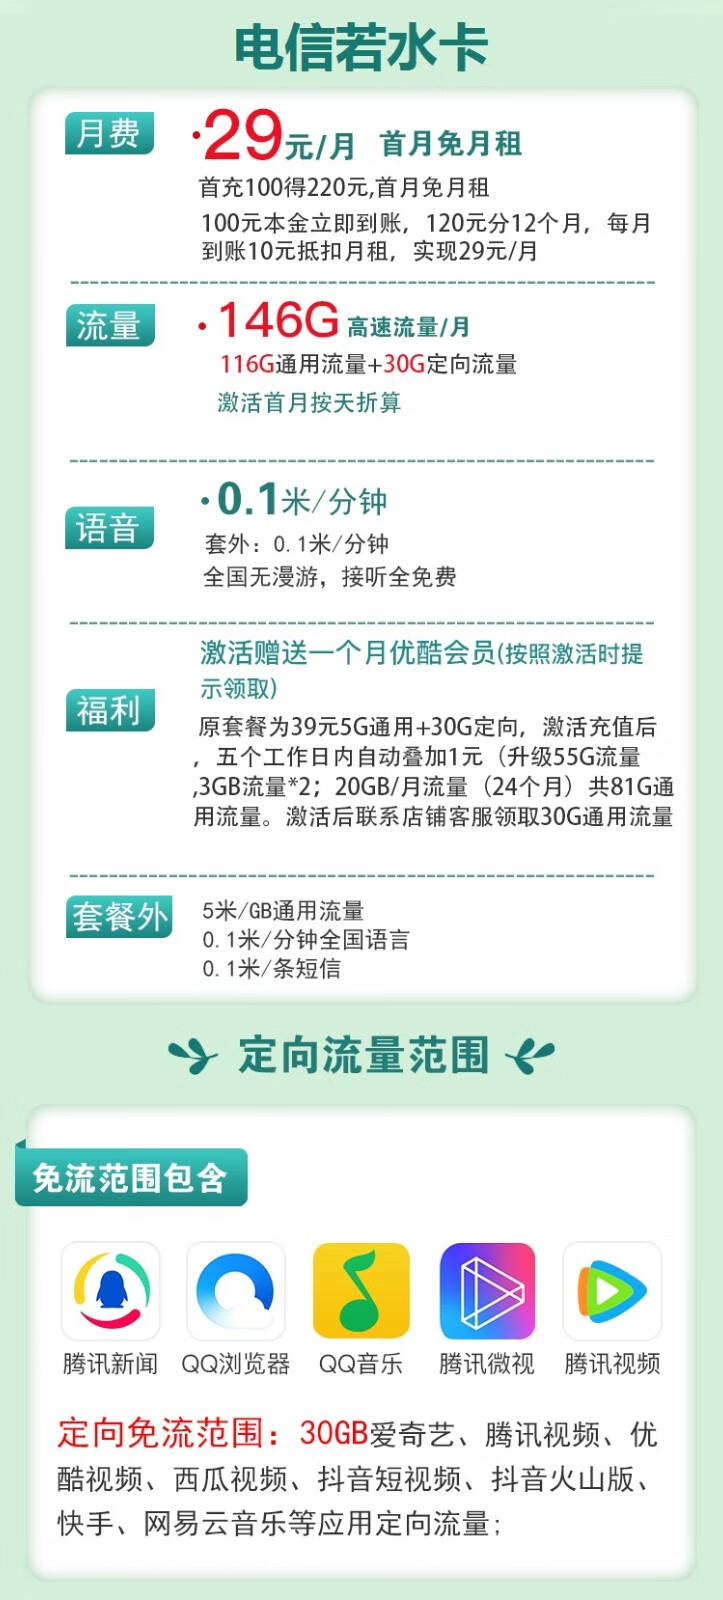 宁夏电信青梅卡29元享70G通用+30G定向APP流量 长期套餐